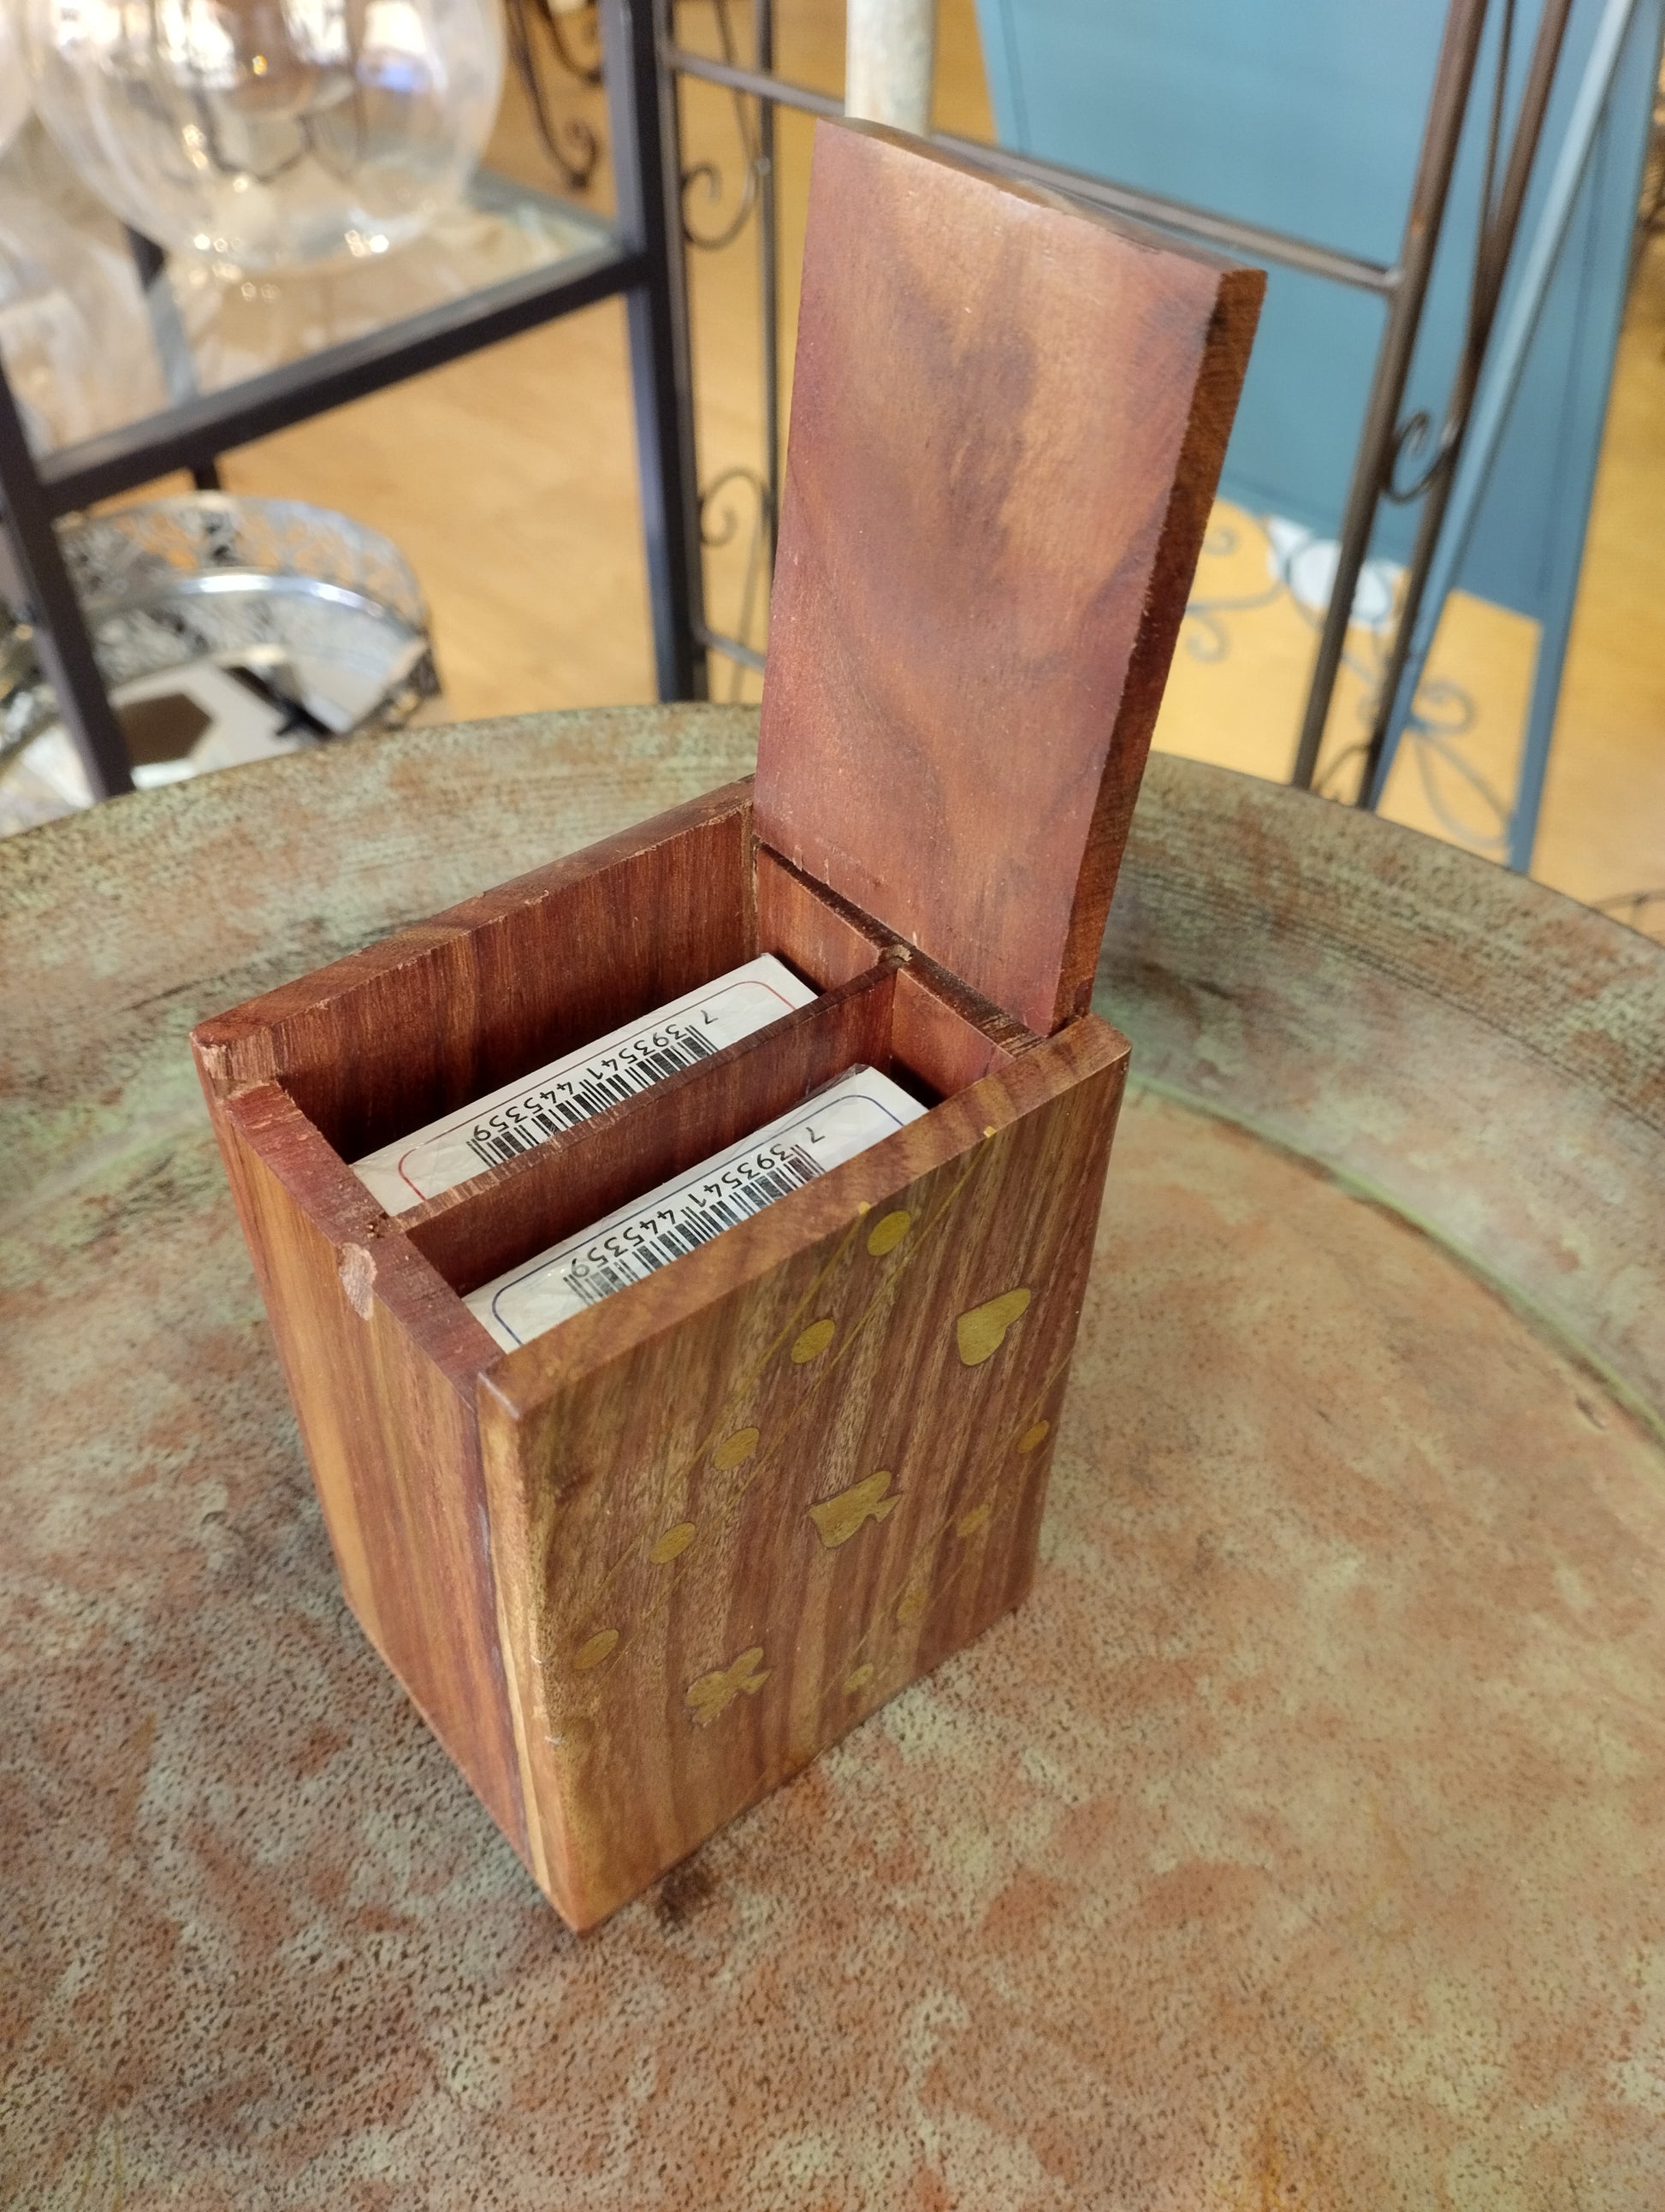 Fin träask som innehåller 2 styck kortspel  Material: Trä  Mått Träask: 6,5x8x11 cm  2 x Kortspel med 54 Spelkort